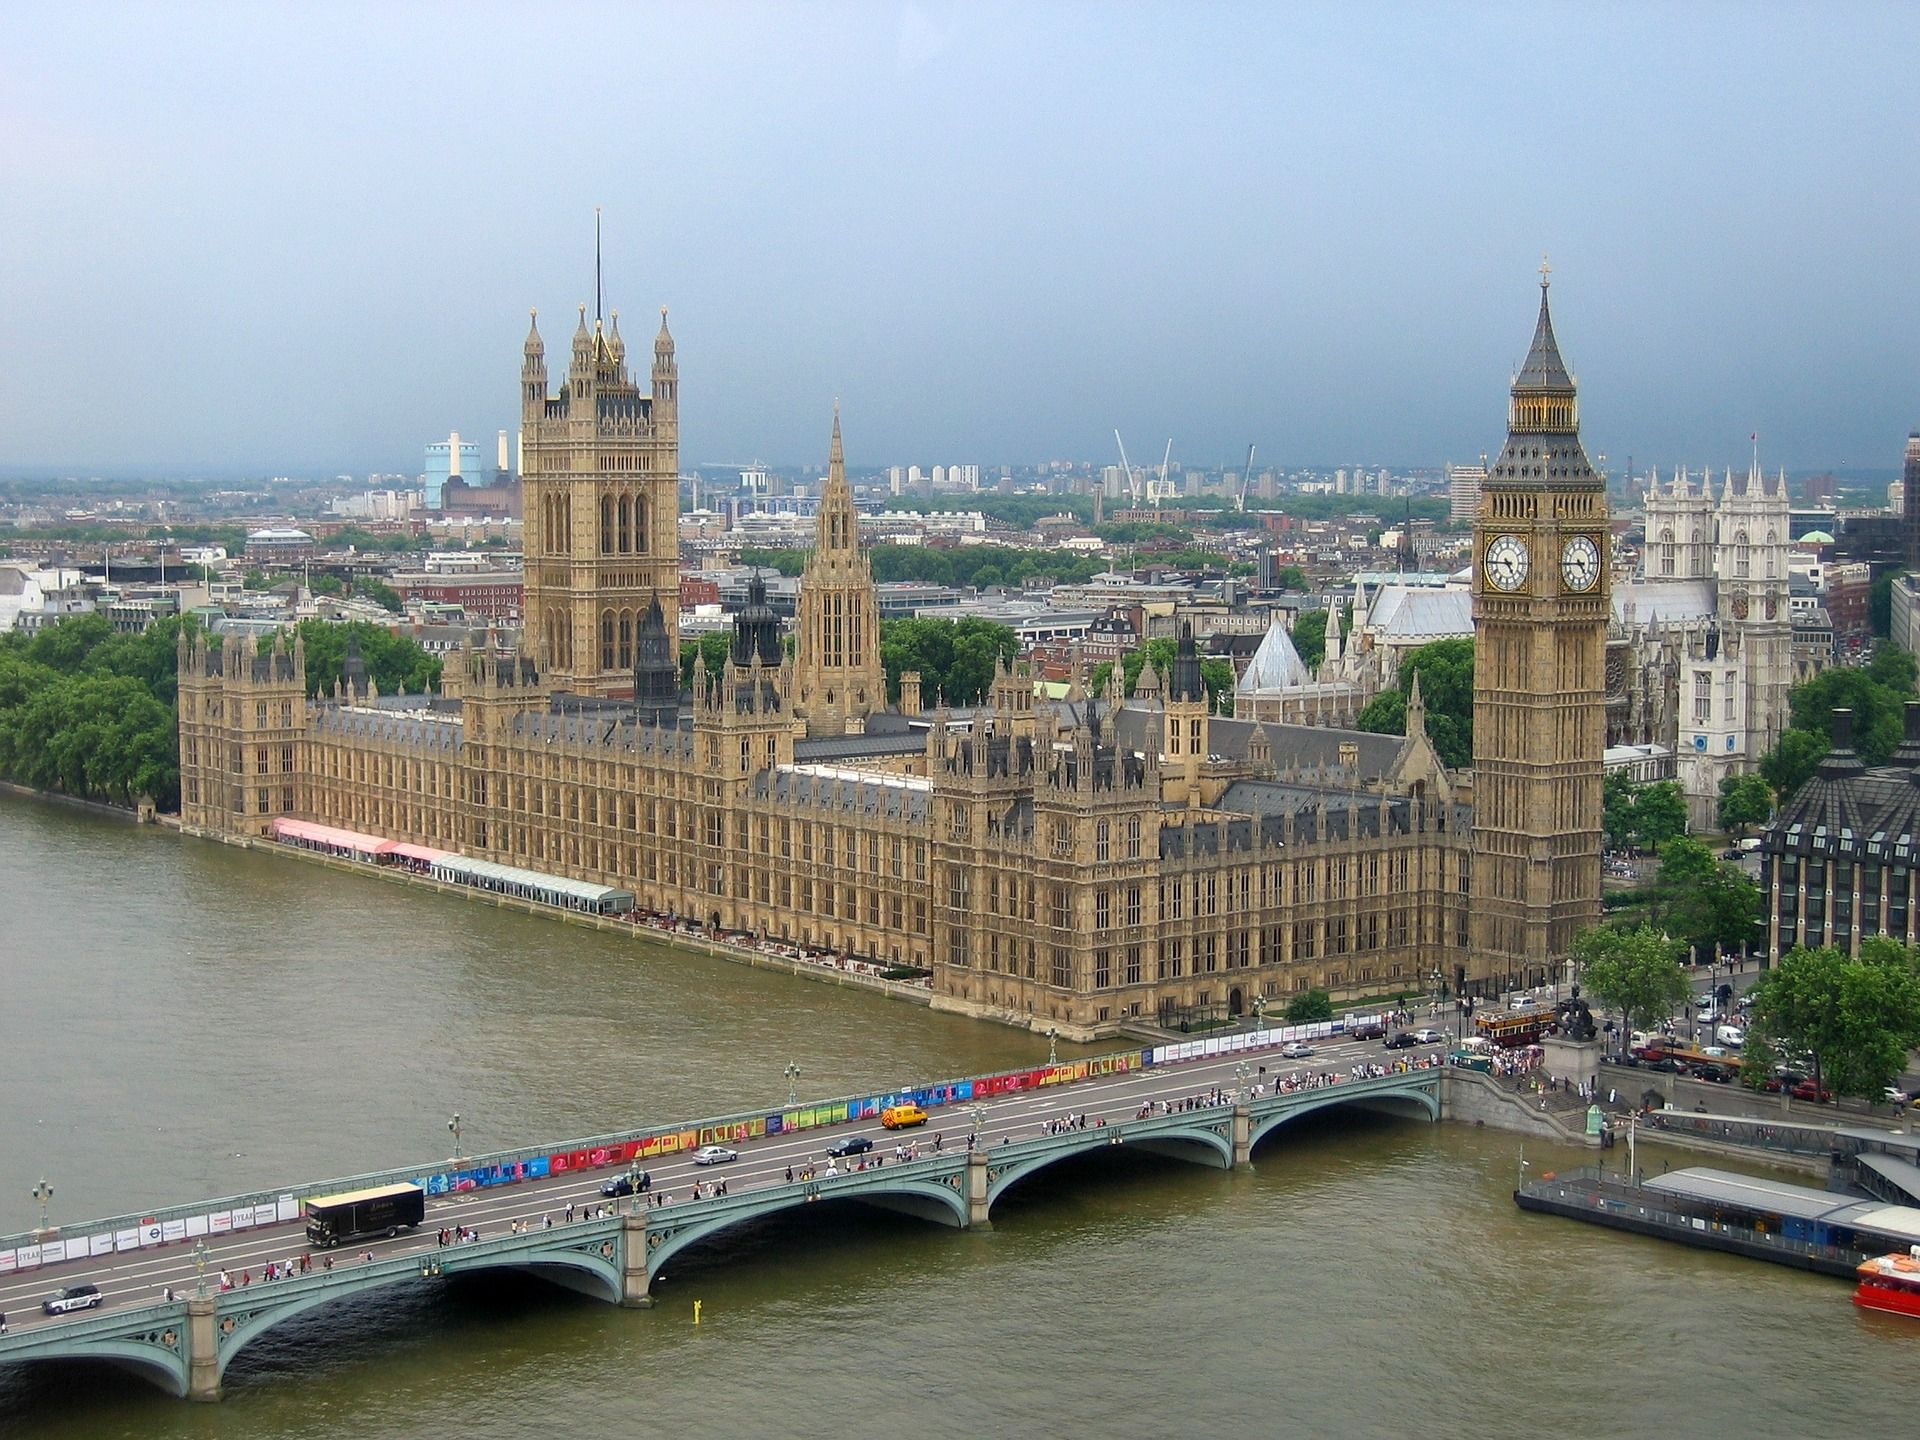 Reino Unido prohibió el uso de la gasolina con plomo en 1999. El plomo persiste en el aire / Foto: Pixabay